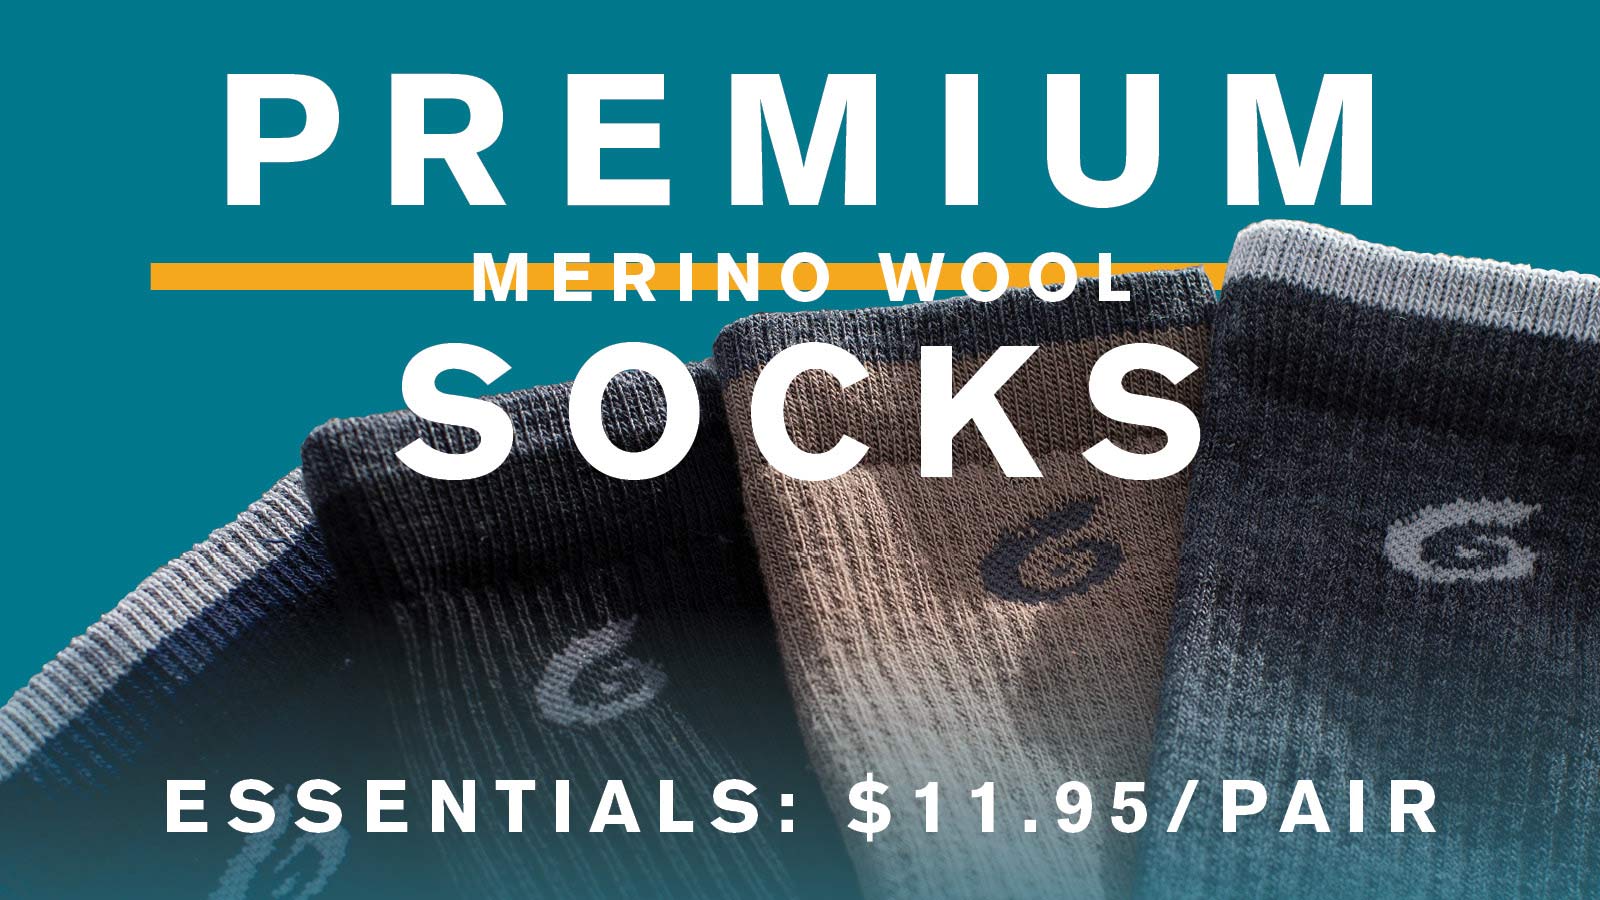 Premium Merino Wool Socks. Essentials: $11.95/Pair